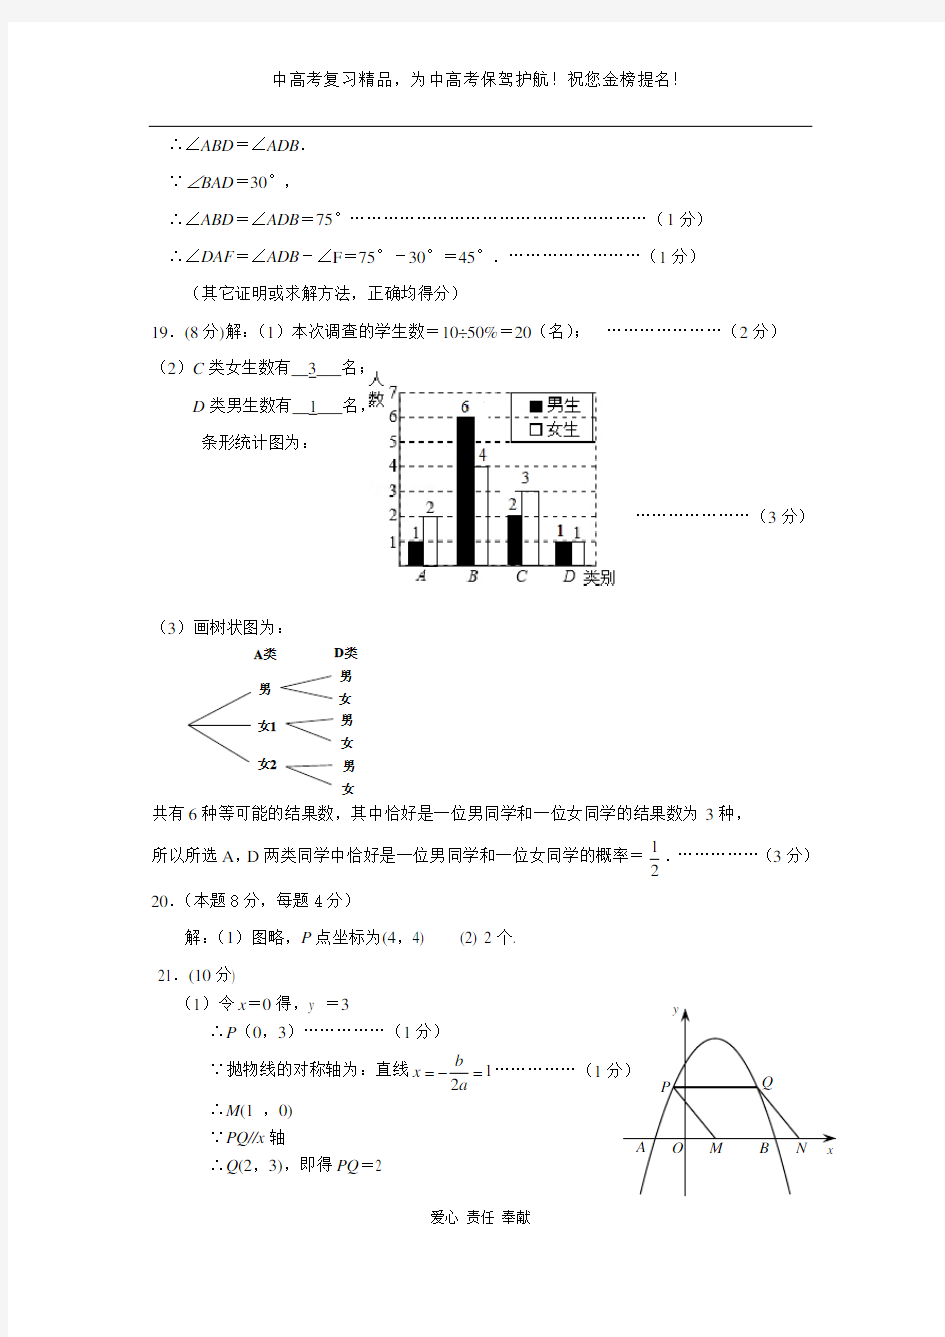 绣山中学二模数学卷参考答案和评分标准(2)